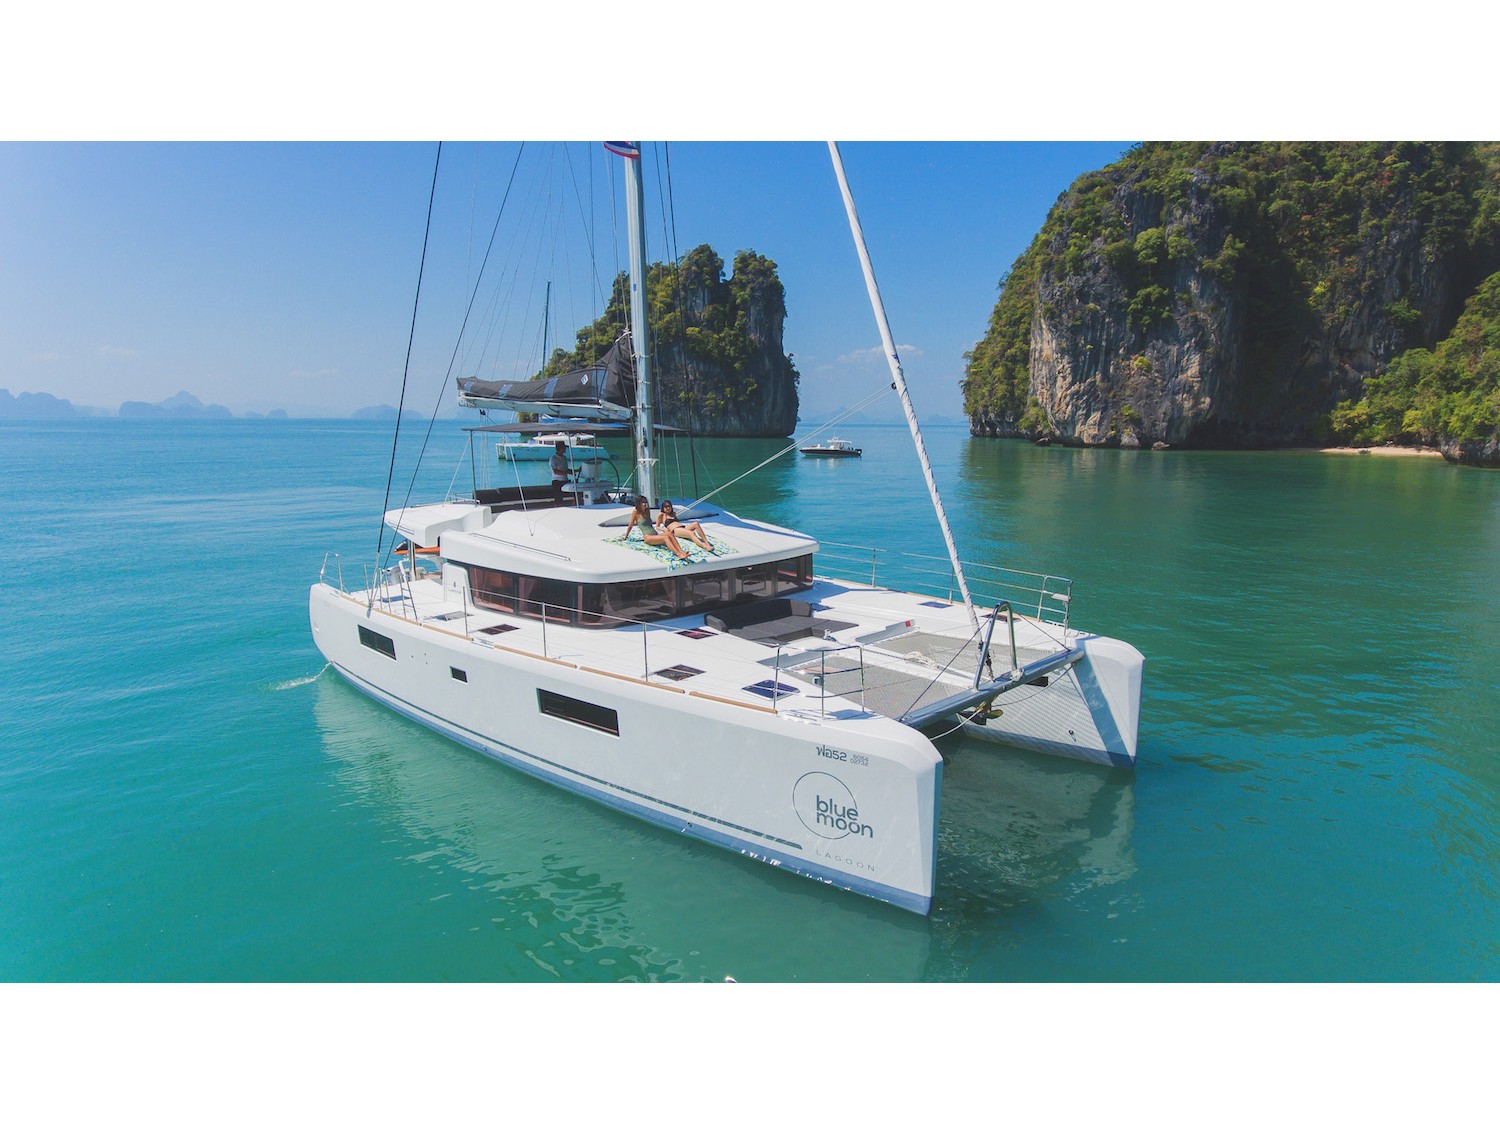 Lagoon 52F - Yacht Charter Phuket & Boat hire in Thailand Phuket Ao Po Grand Marina 2